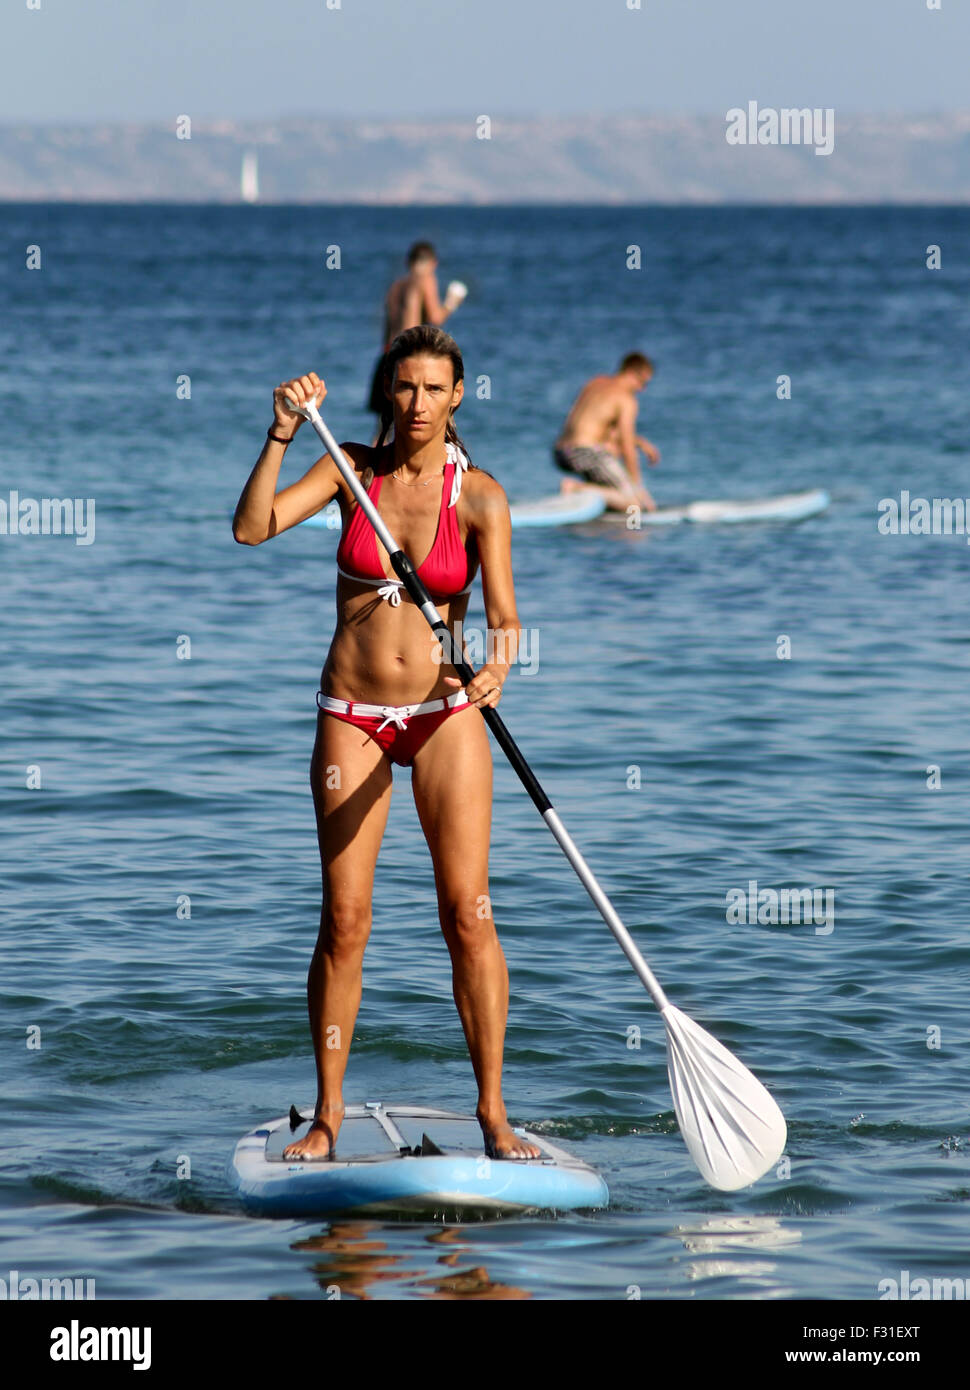 Spiaggia di Palma Nova, Maiorca, Spagna - 25 agosto 2015: Palma Nova beach resort il 25 agosto 2015. Una giovane donna è paddle bo Foto Stock